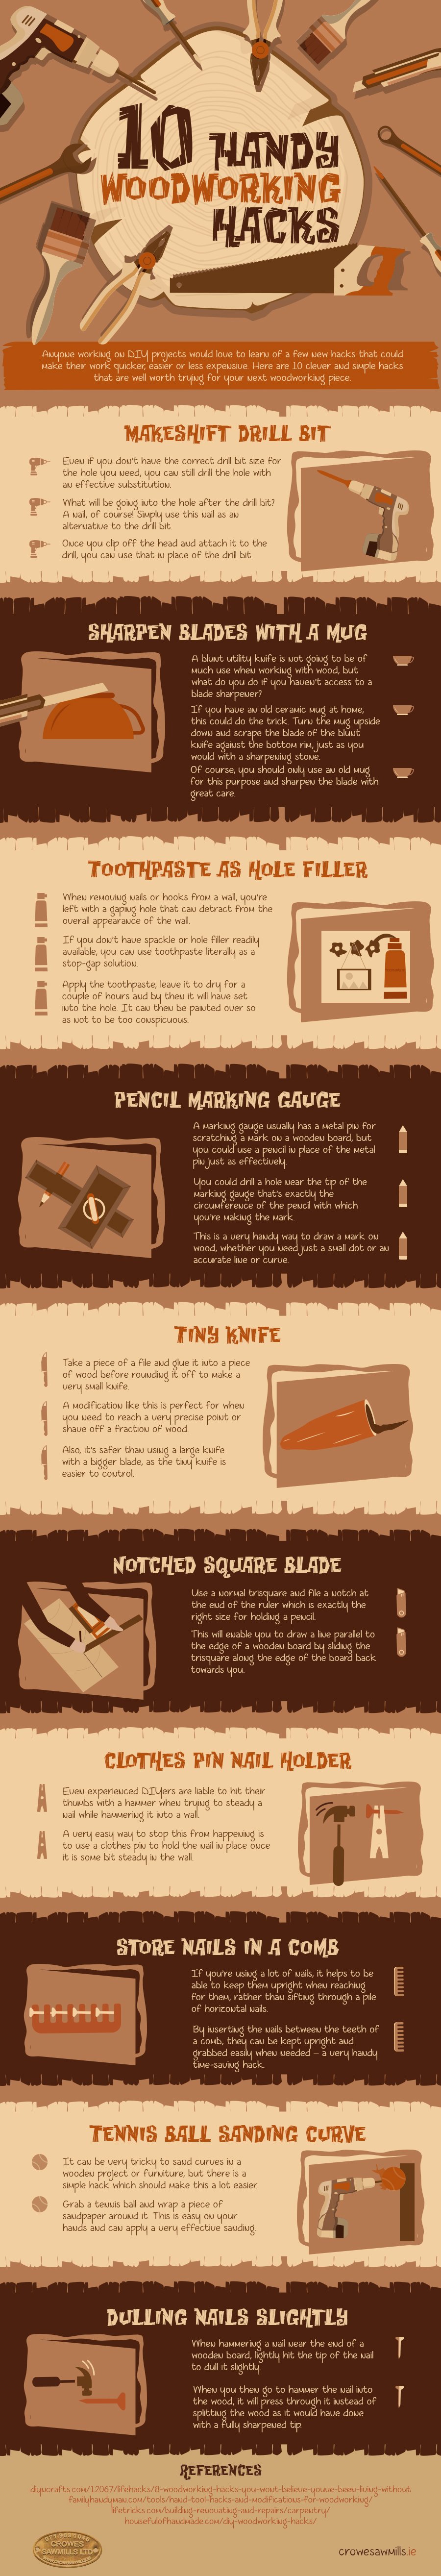 10-handy-woodworking-hacks-infographic 